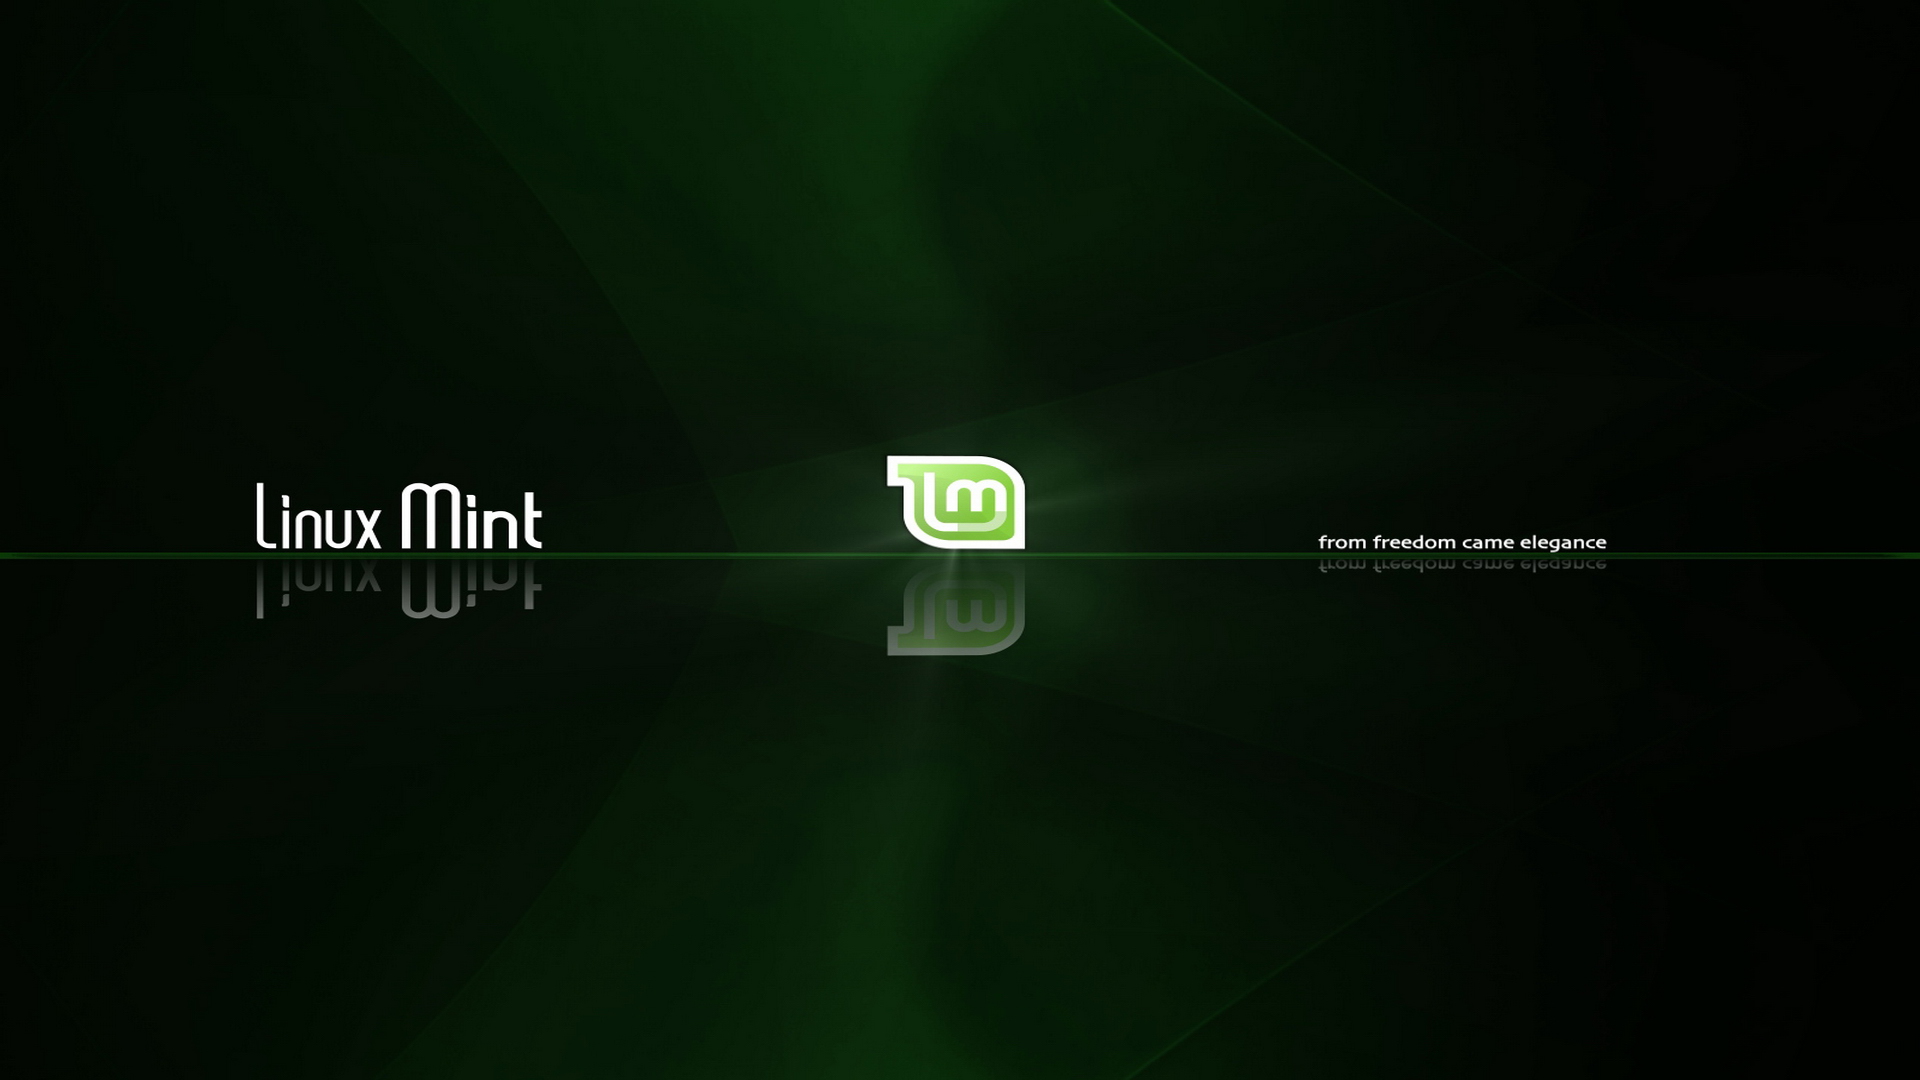  wallpaper windows vs linux desktop wallpaper linux mint 17 linux mint